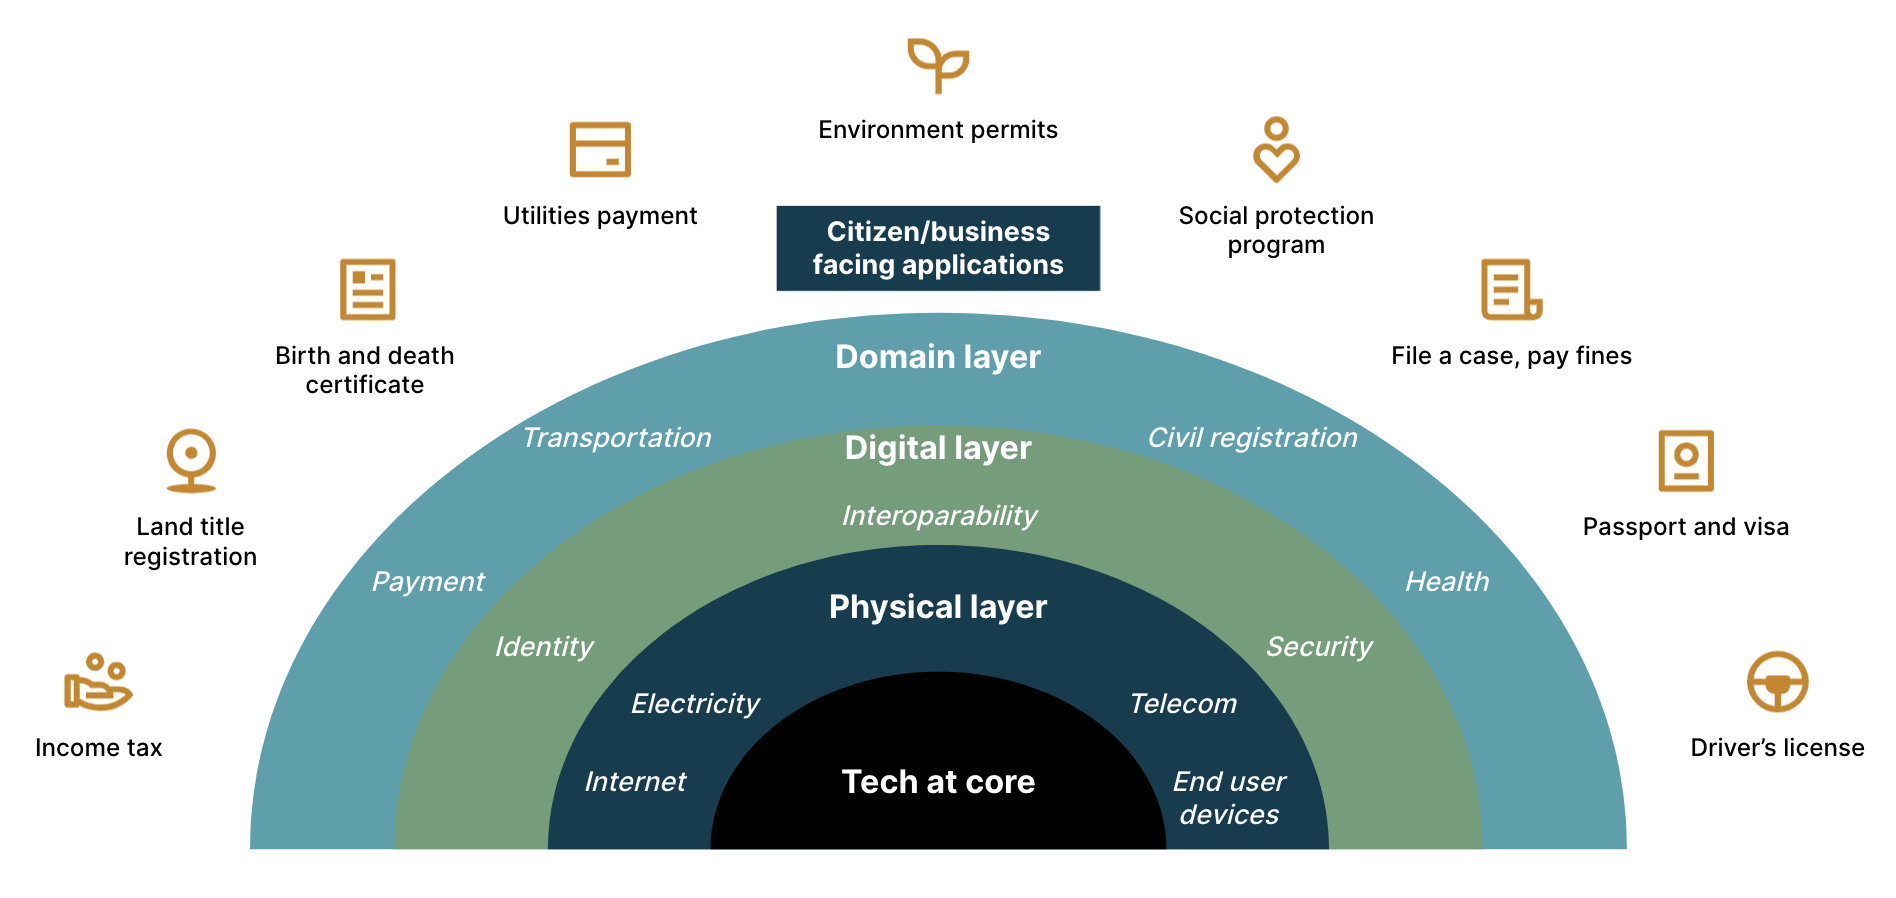 Leveraging the digital public goods platform for effective citizen services